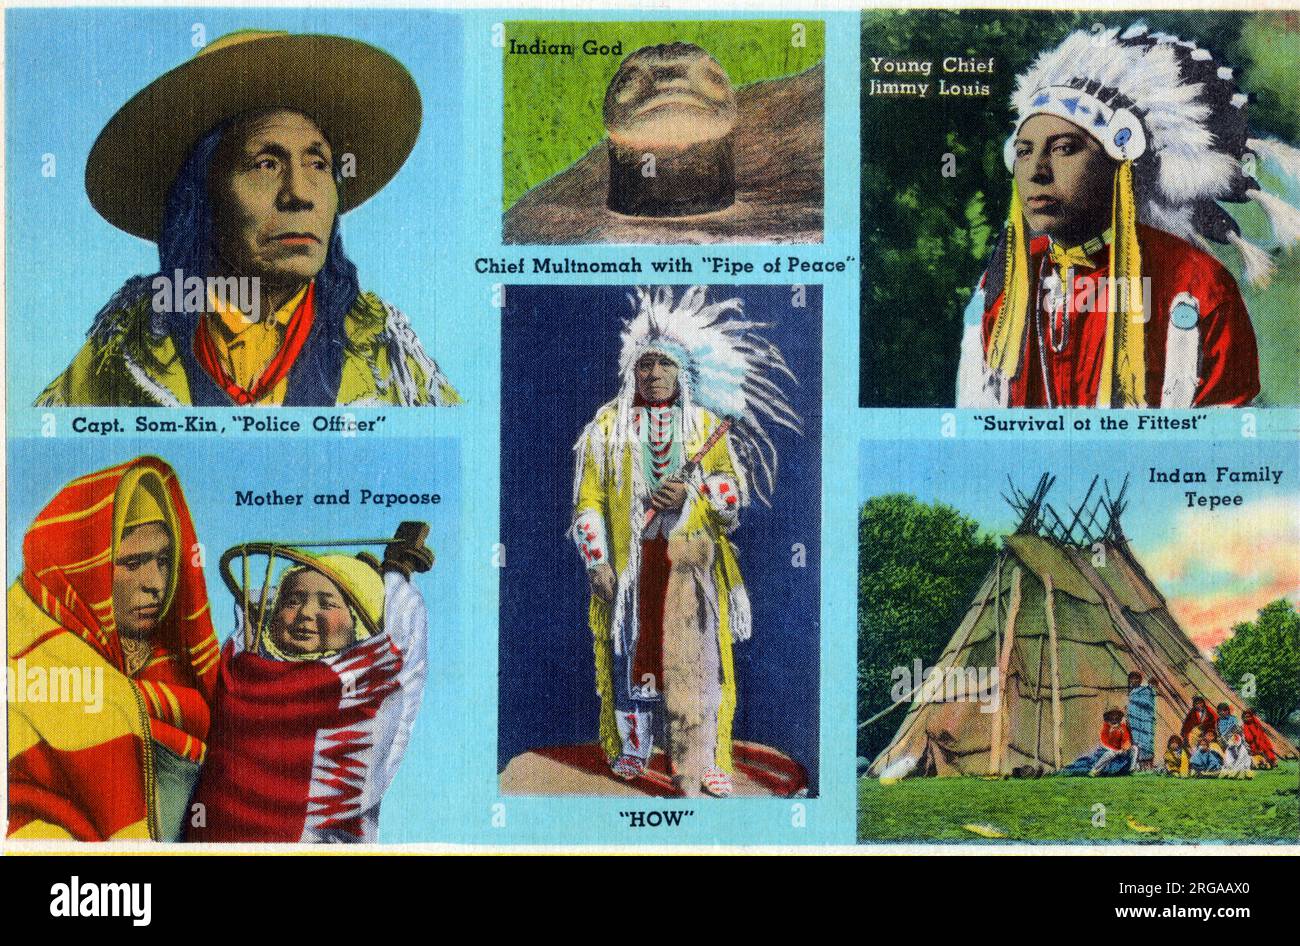 Portland, Oregon, USA – (im Uhrzeigersinn von oben links): Captain Som-Kin, „Police Officer“; ein „indischer Gott“; junger Chief Jimmy Louis; eine indische Mutter und Papoose; Chief Multnomah mit „Pipe of Peace“; ein Tepee der indischen Familie. Stockfoto